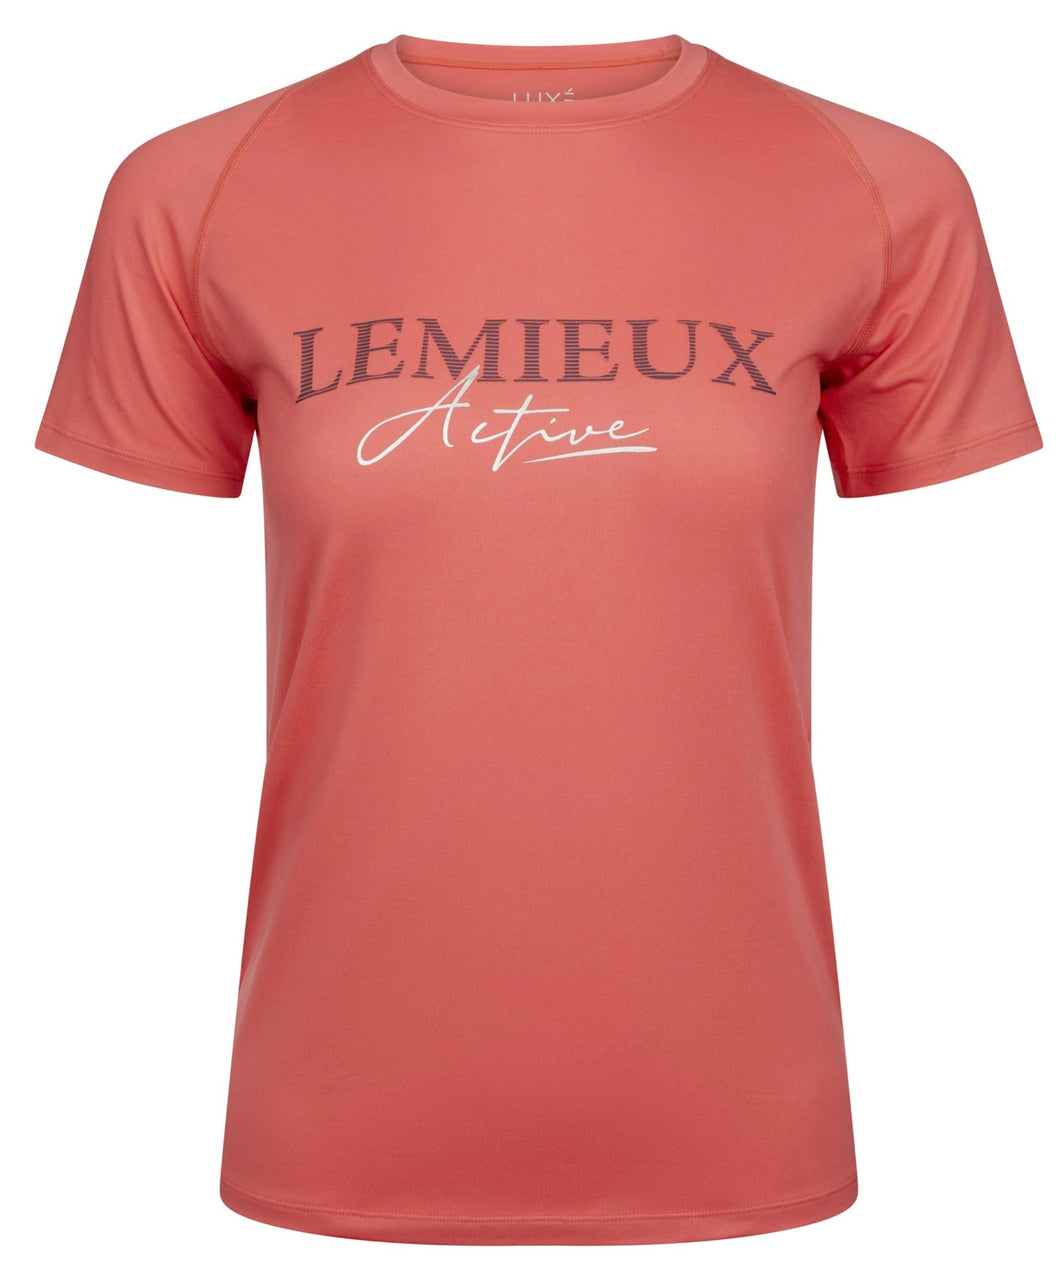 Luxe t shirt Lemieux